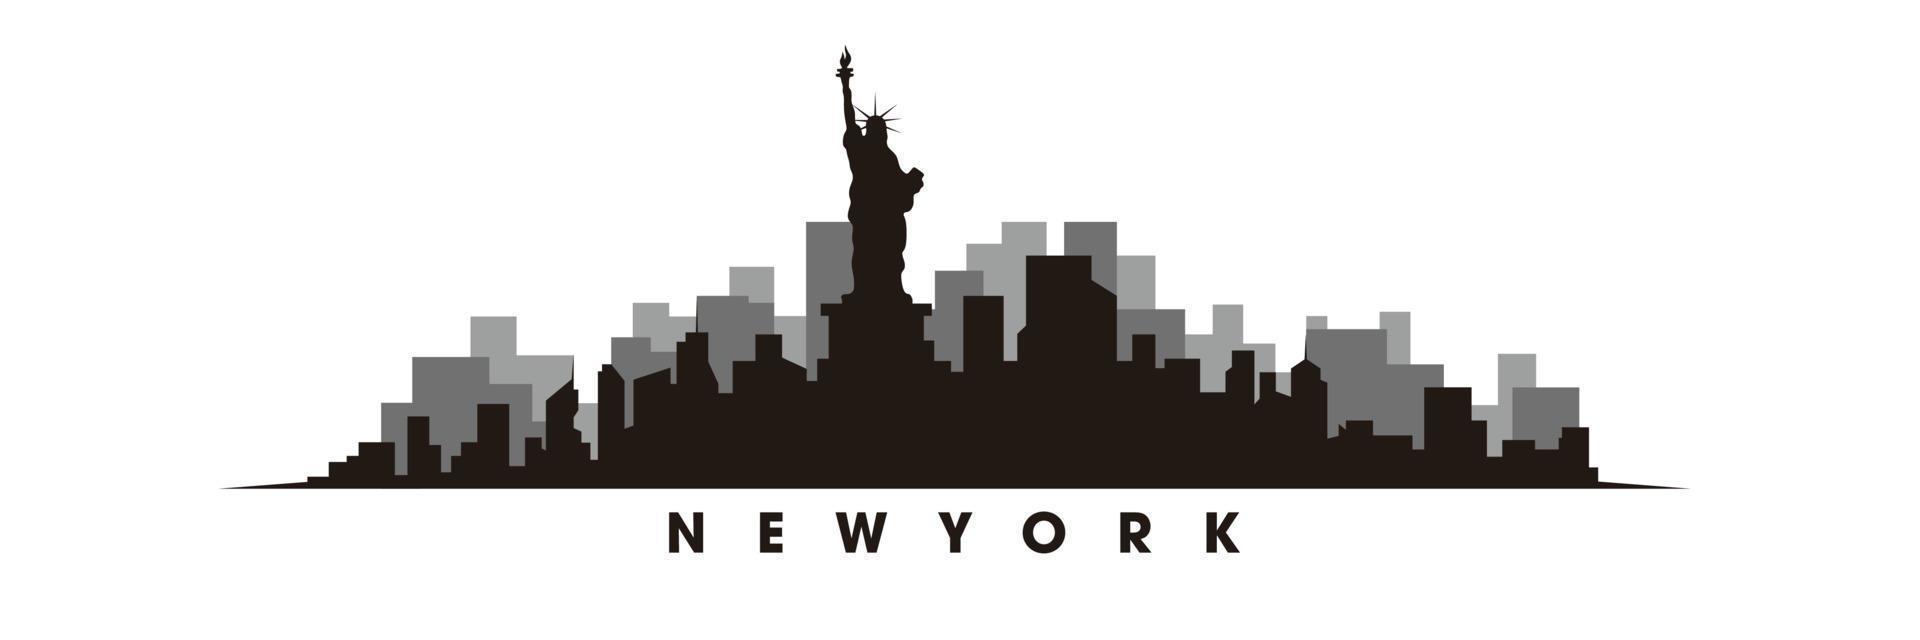 Nouveau york horizon et Repères silhouette vecteur